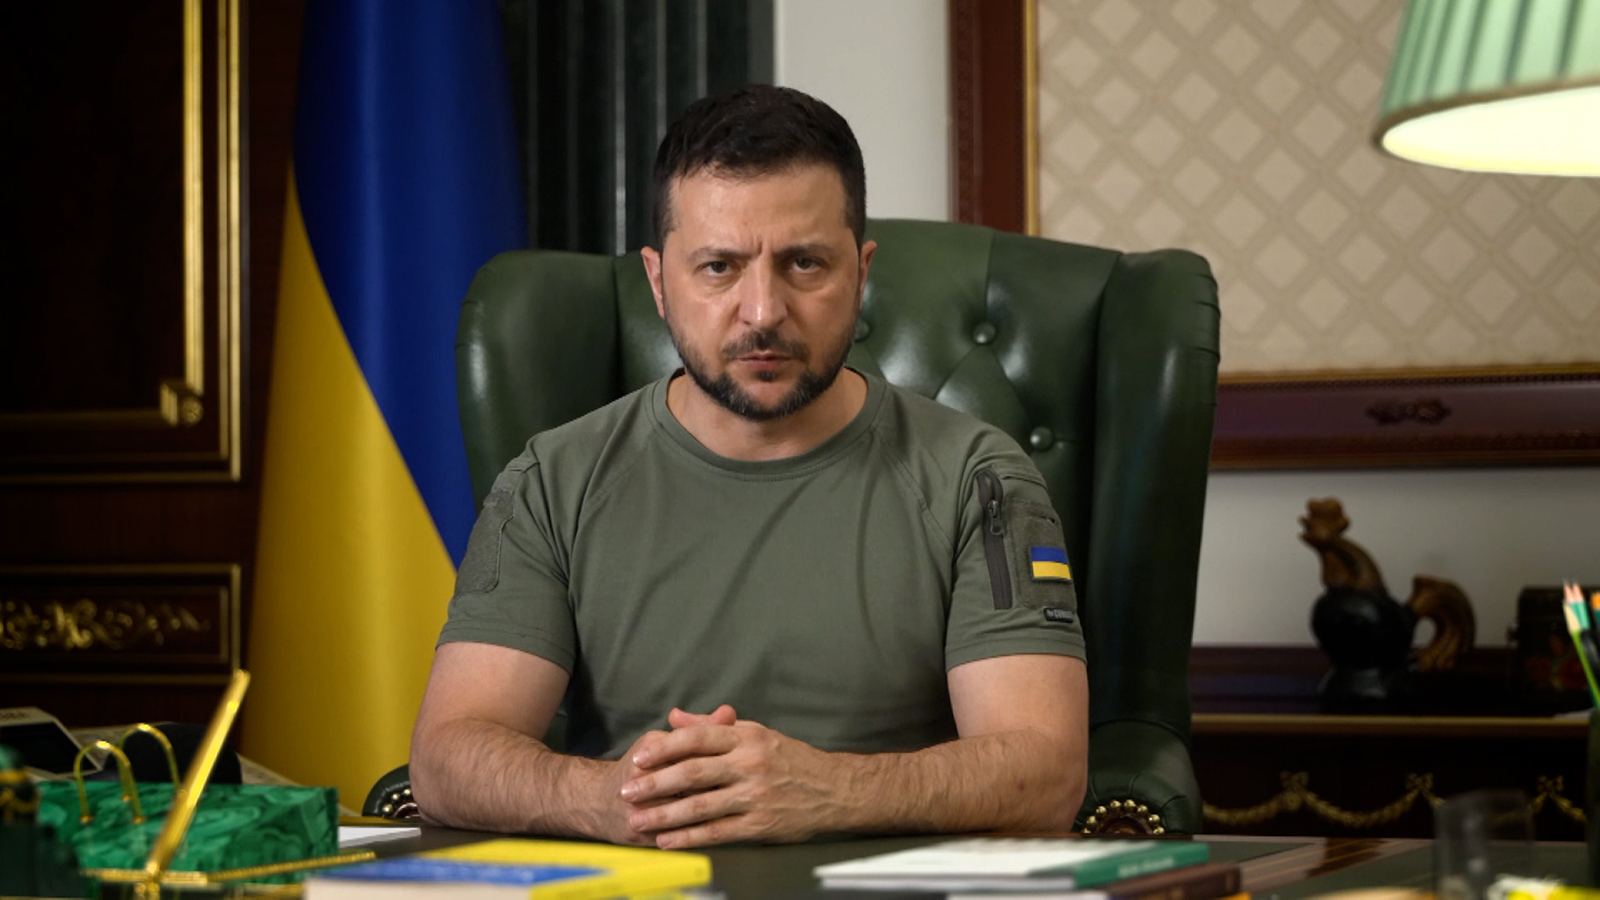 Tổng thống Ukraine Volodymyr Zelensky phát biểu đêm 11/9. Ảnh: Văn phòng Tổng thống Ukraine